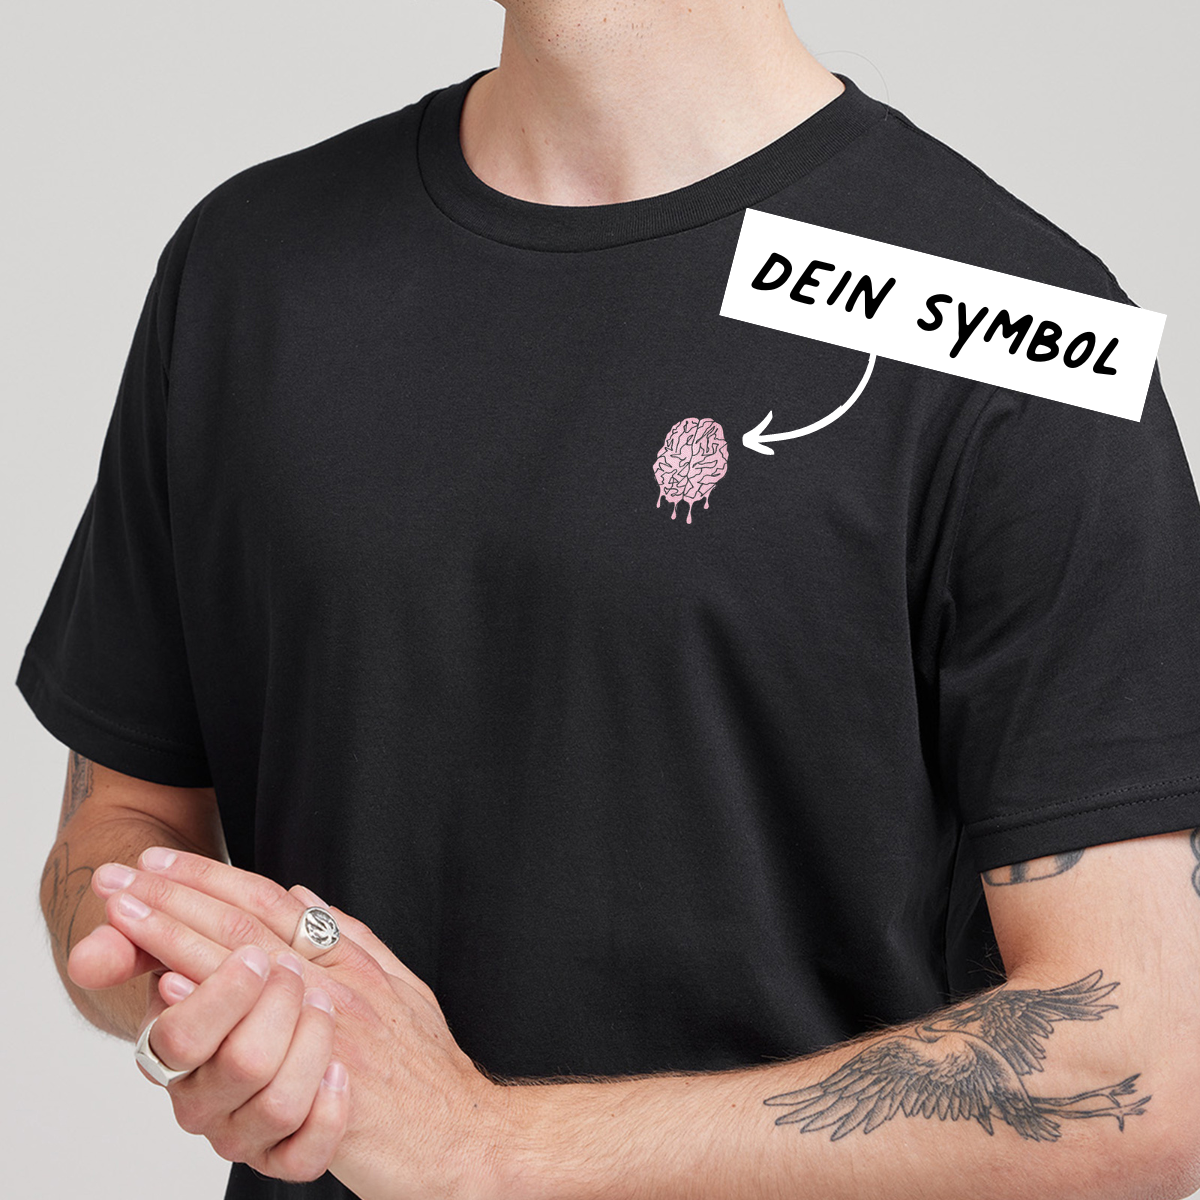 Männer - Personalisiertes T-Shirt mit Stickerei